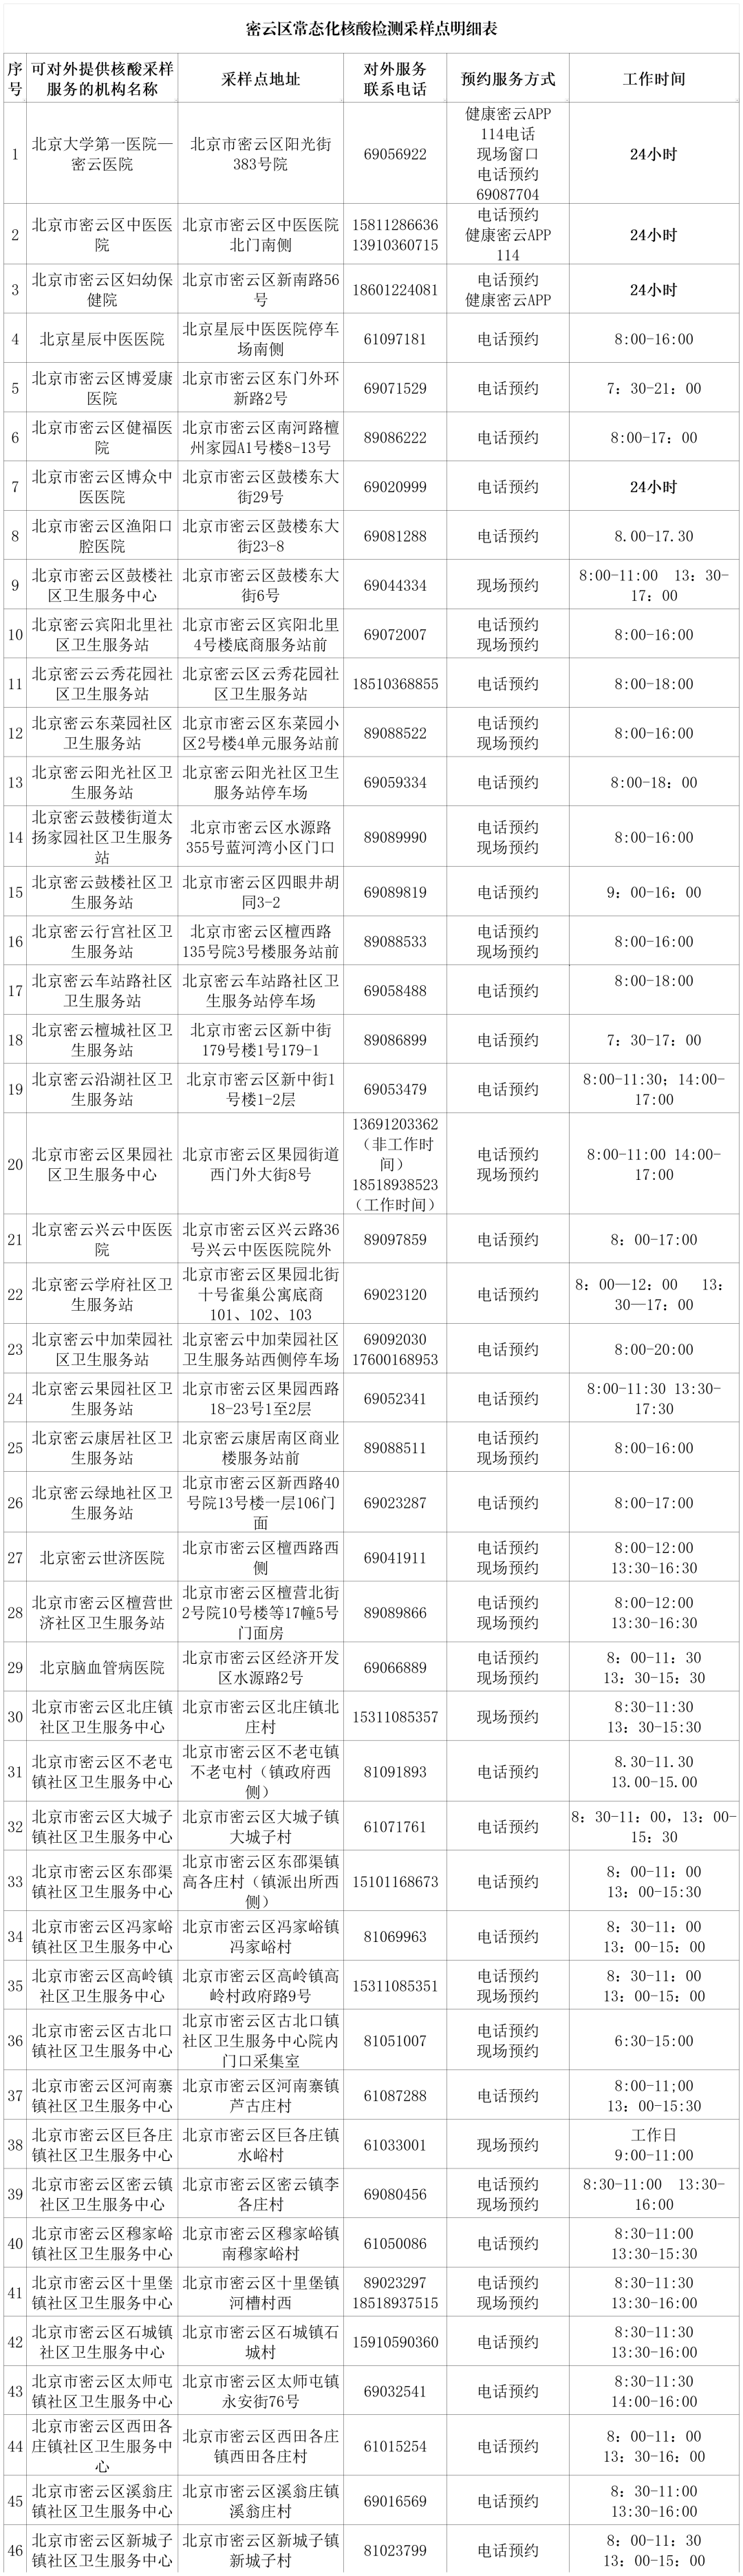 北京密云区设立46个免费常态化核酸采样点